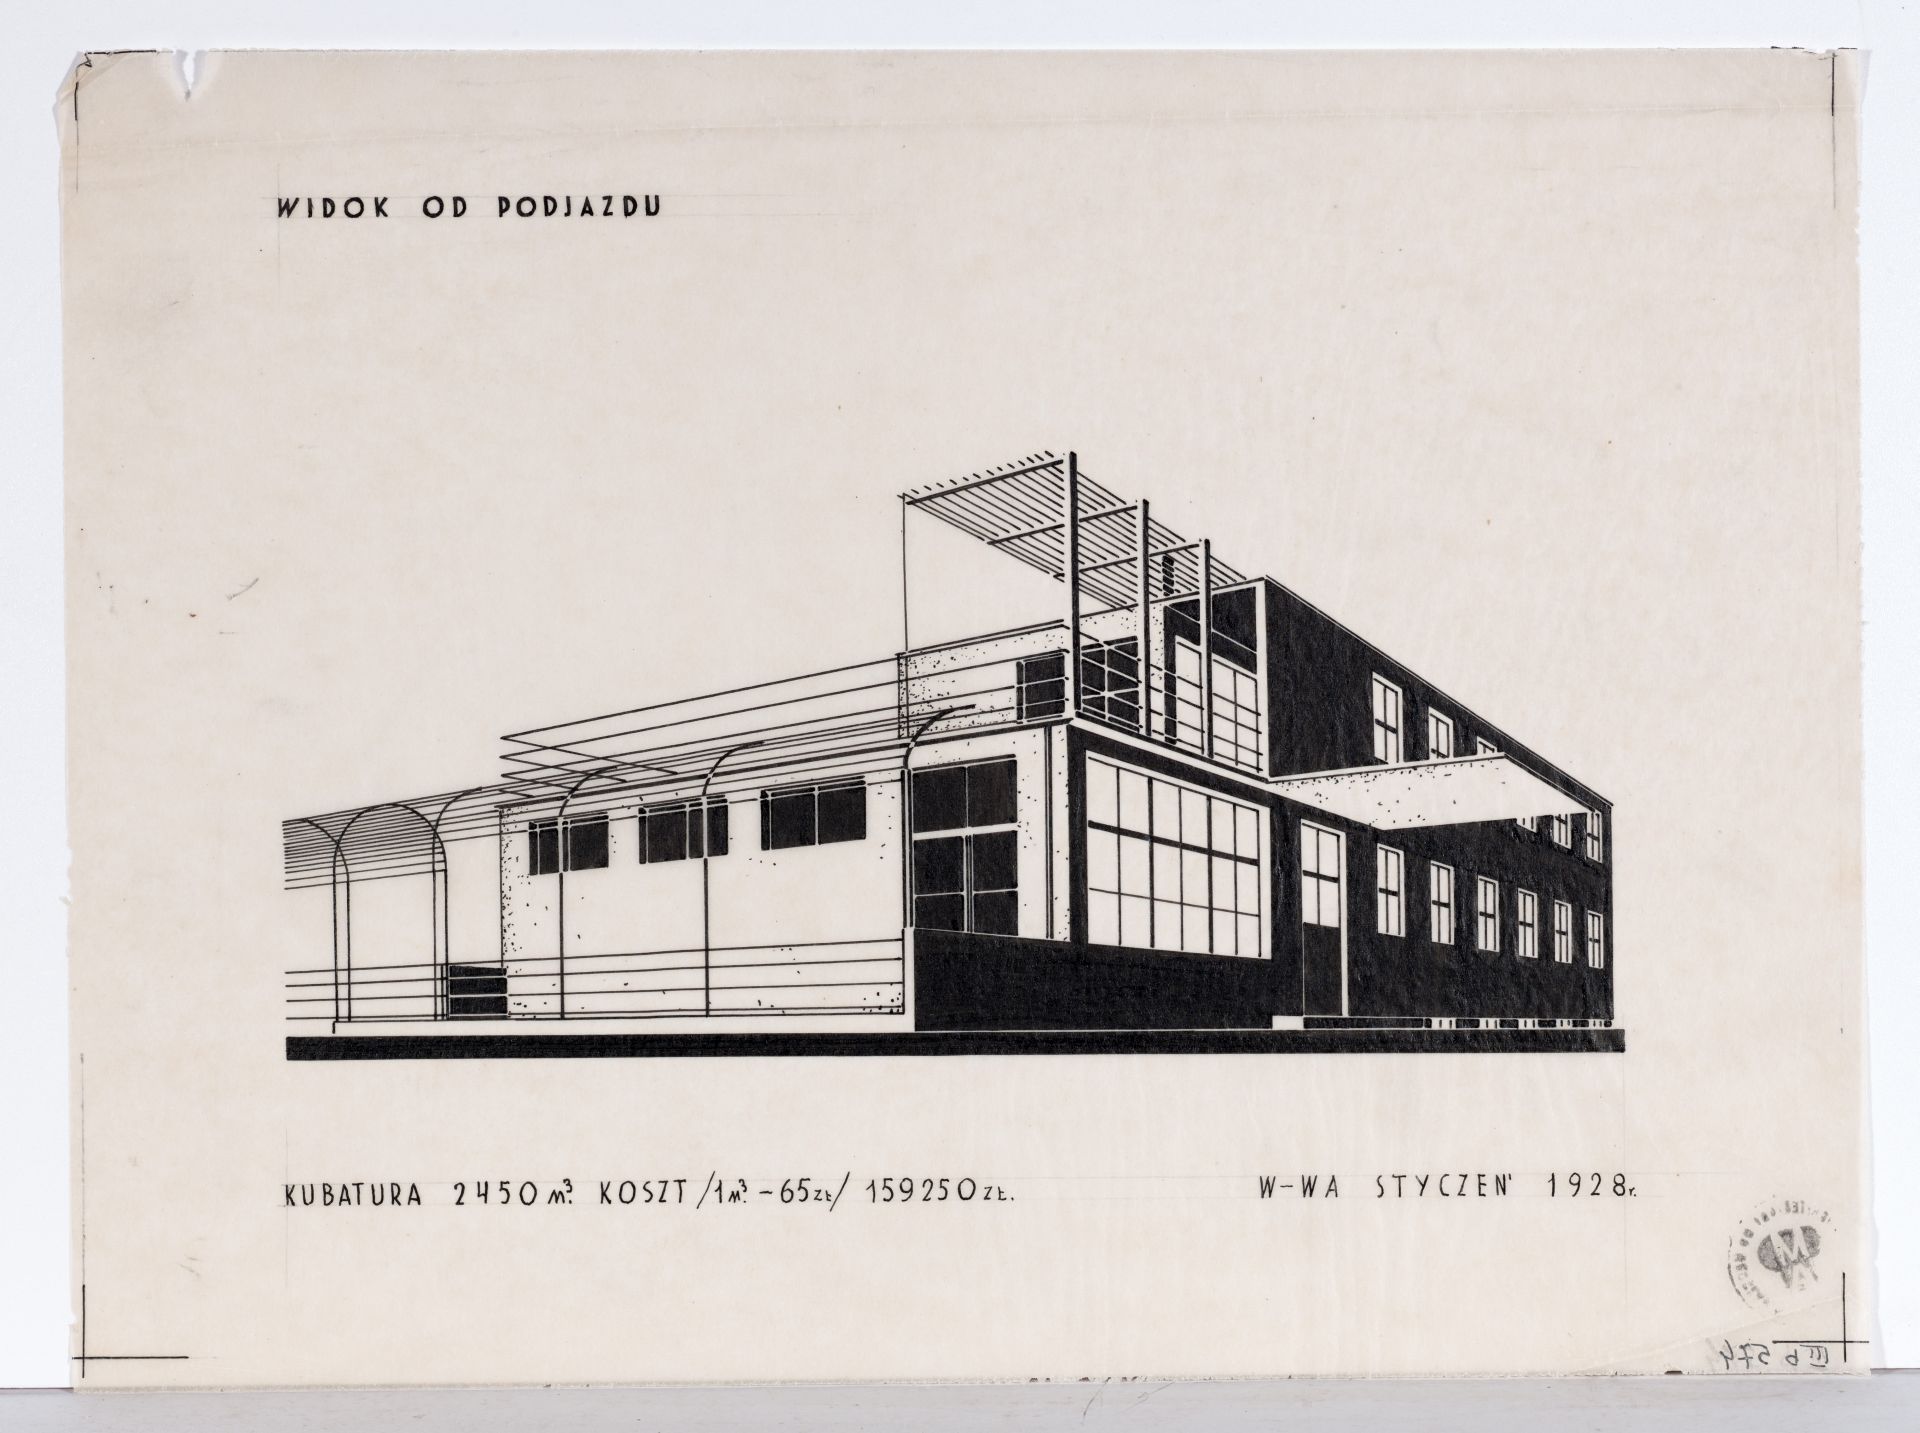 Projekt koncepcyjny budynku Tabity autorstwa Bohdana Lacherta i Józefa Szanajcy 1928 r (Muzeum Architektury we Wrocławiu)